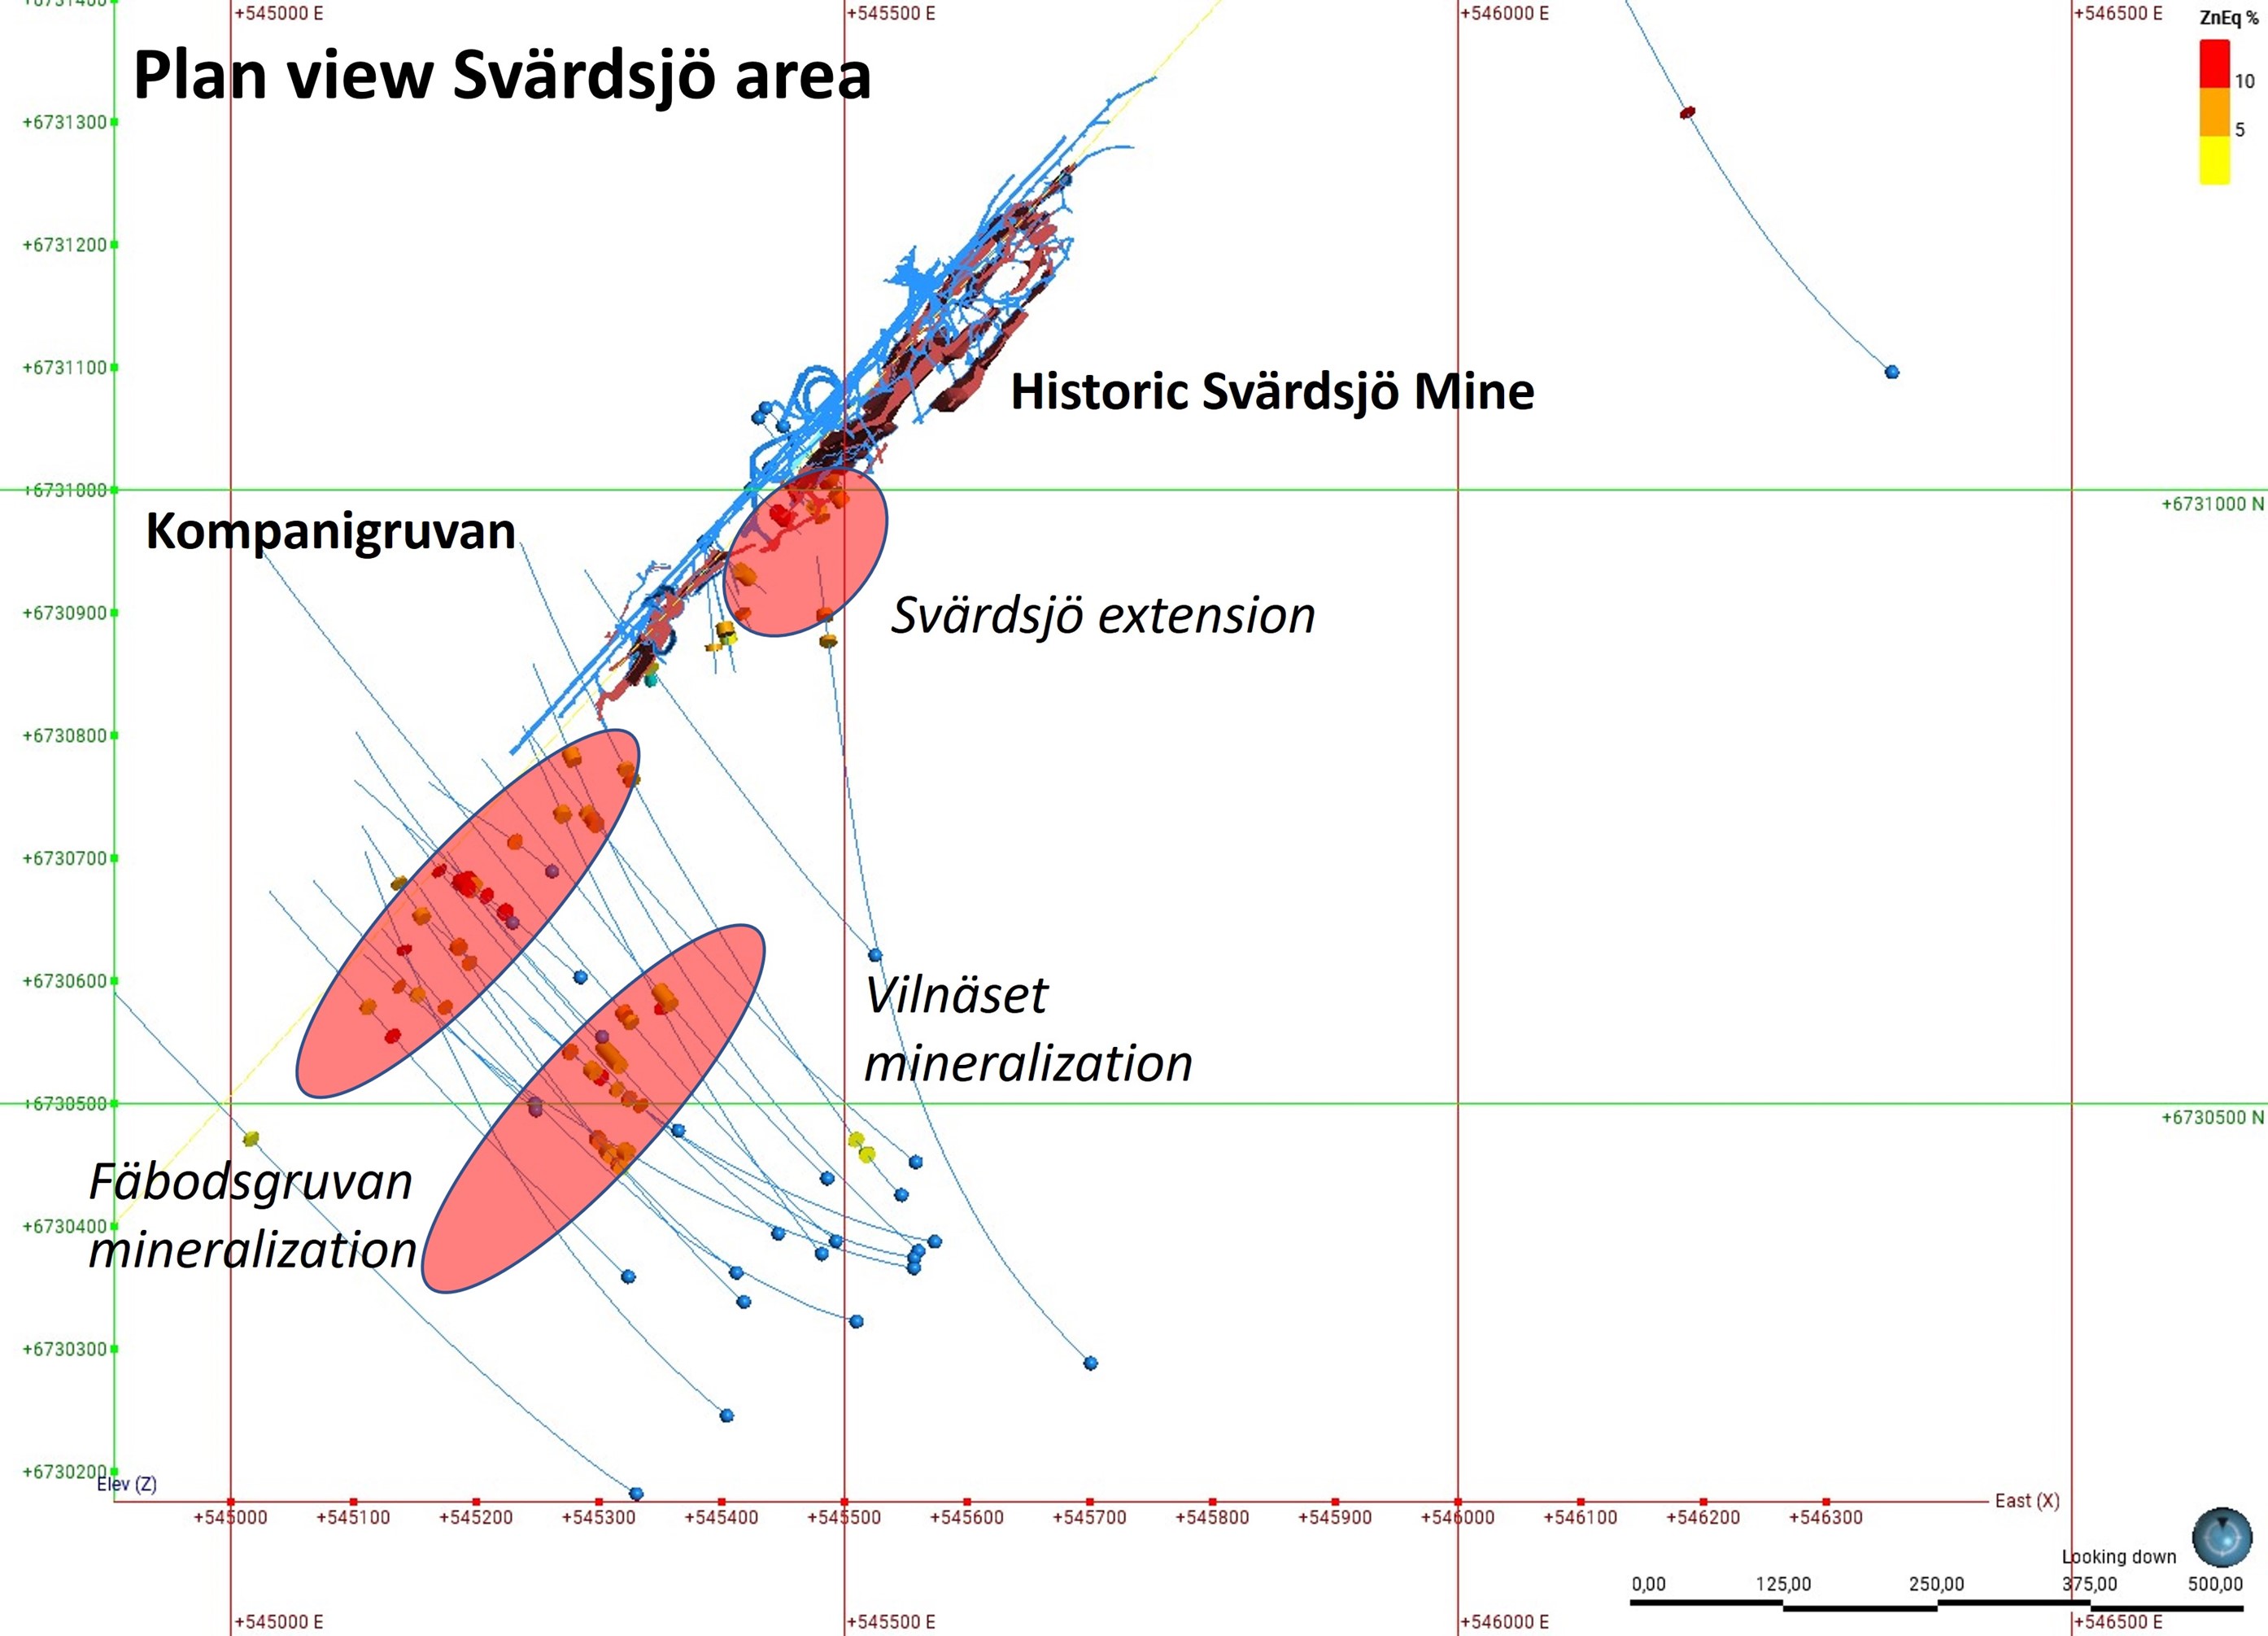 Plan View of Svärdsjö Mine Area